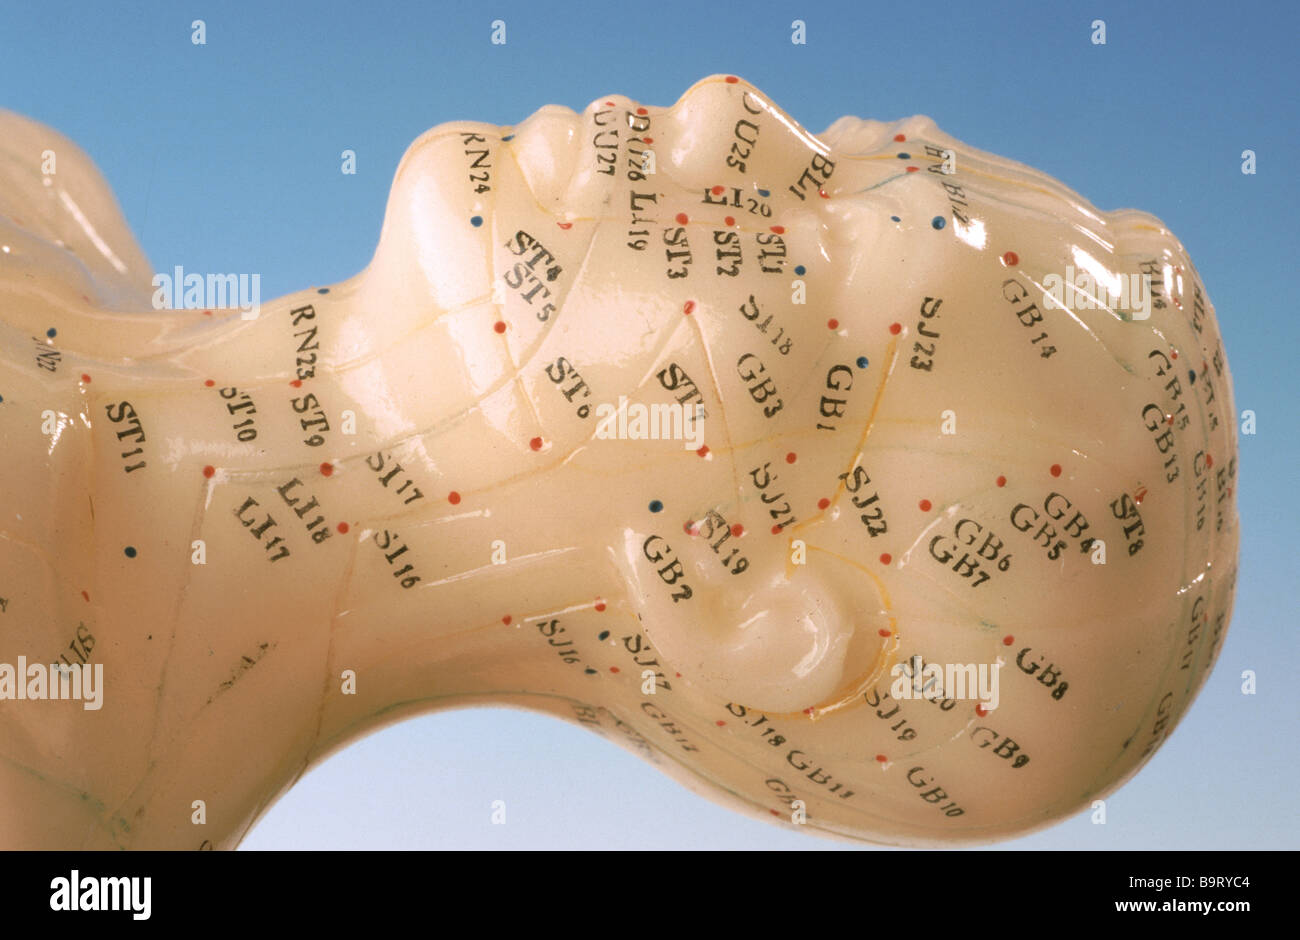 Akupunkturpunkte des menschlichen Körpers abgebildet auf einem Trainings-Modell Stockfoto